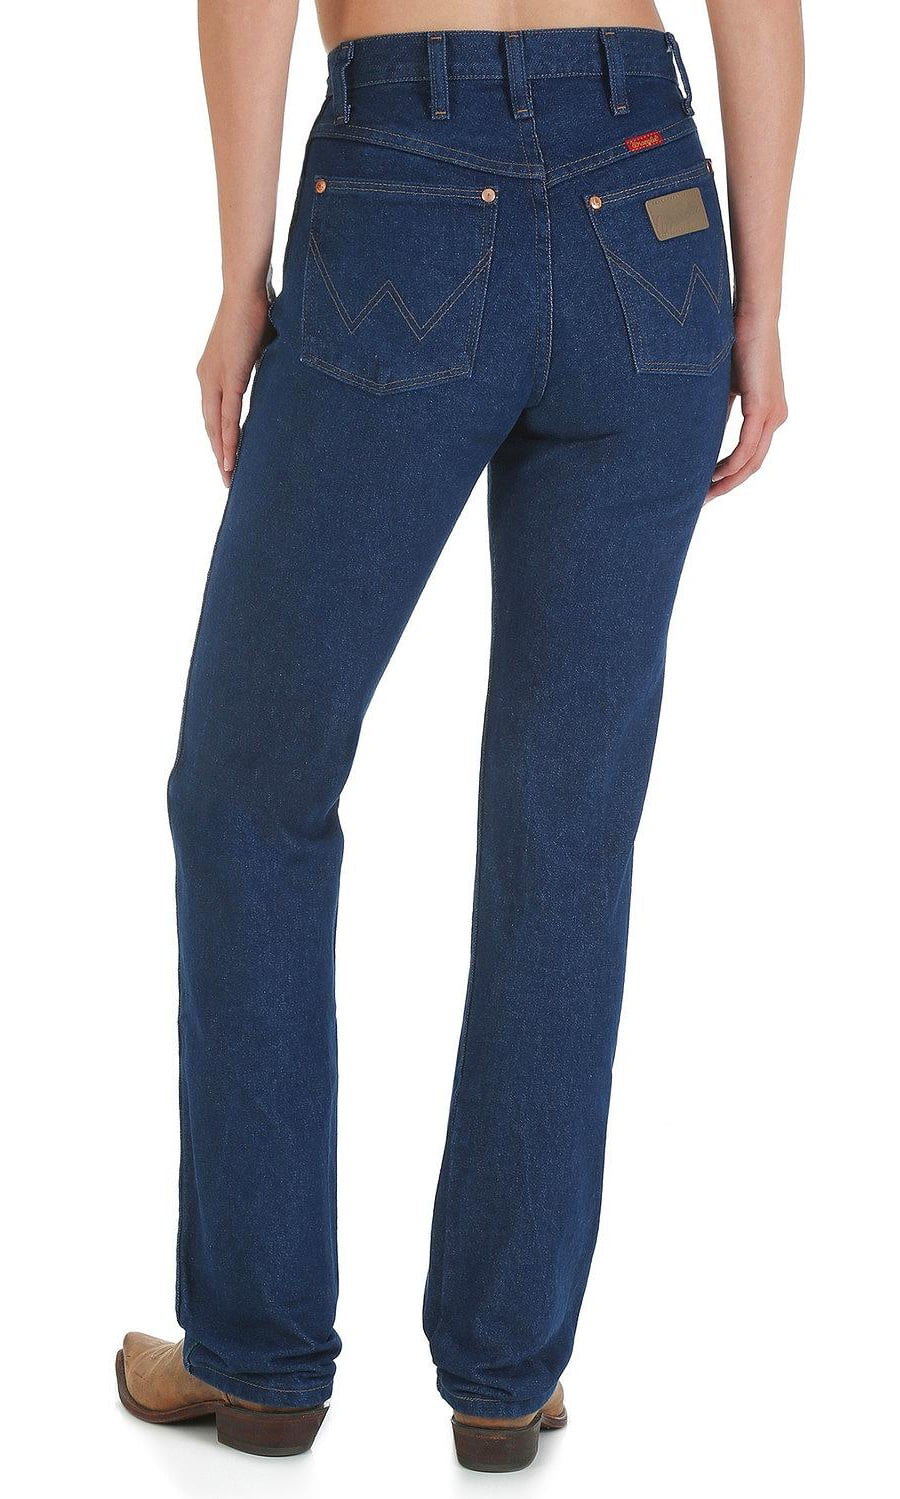 Wrangler - wrangler women's jeans 14mwz slim fit - 14mwzwk - Walmart ...